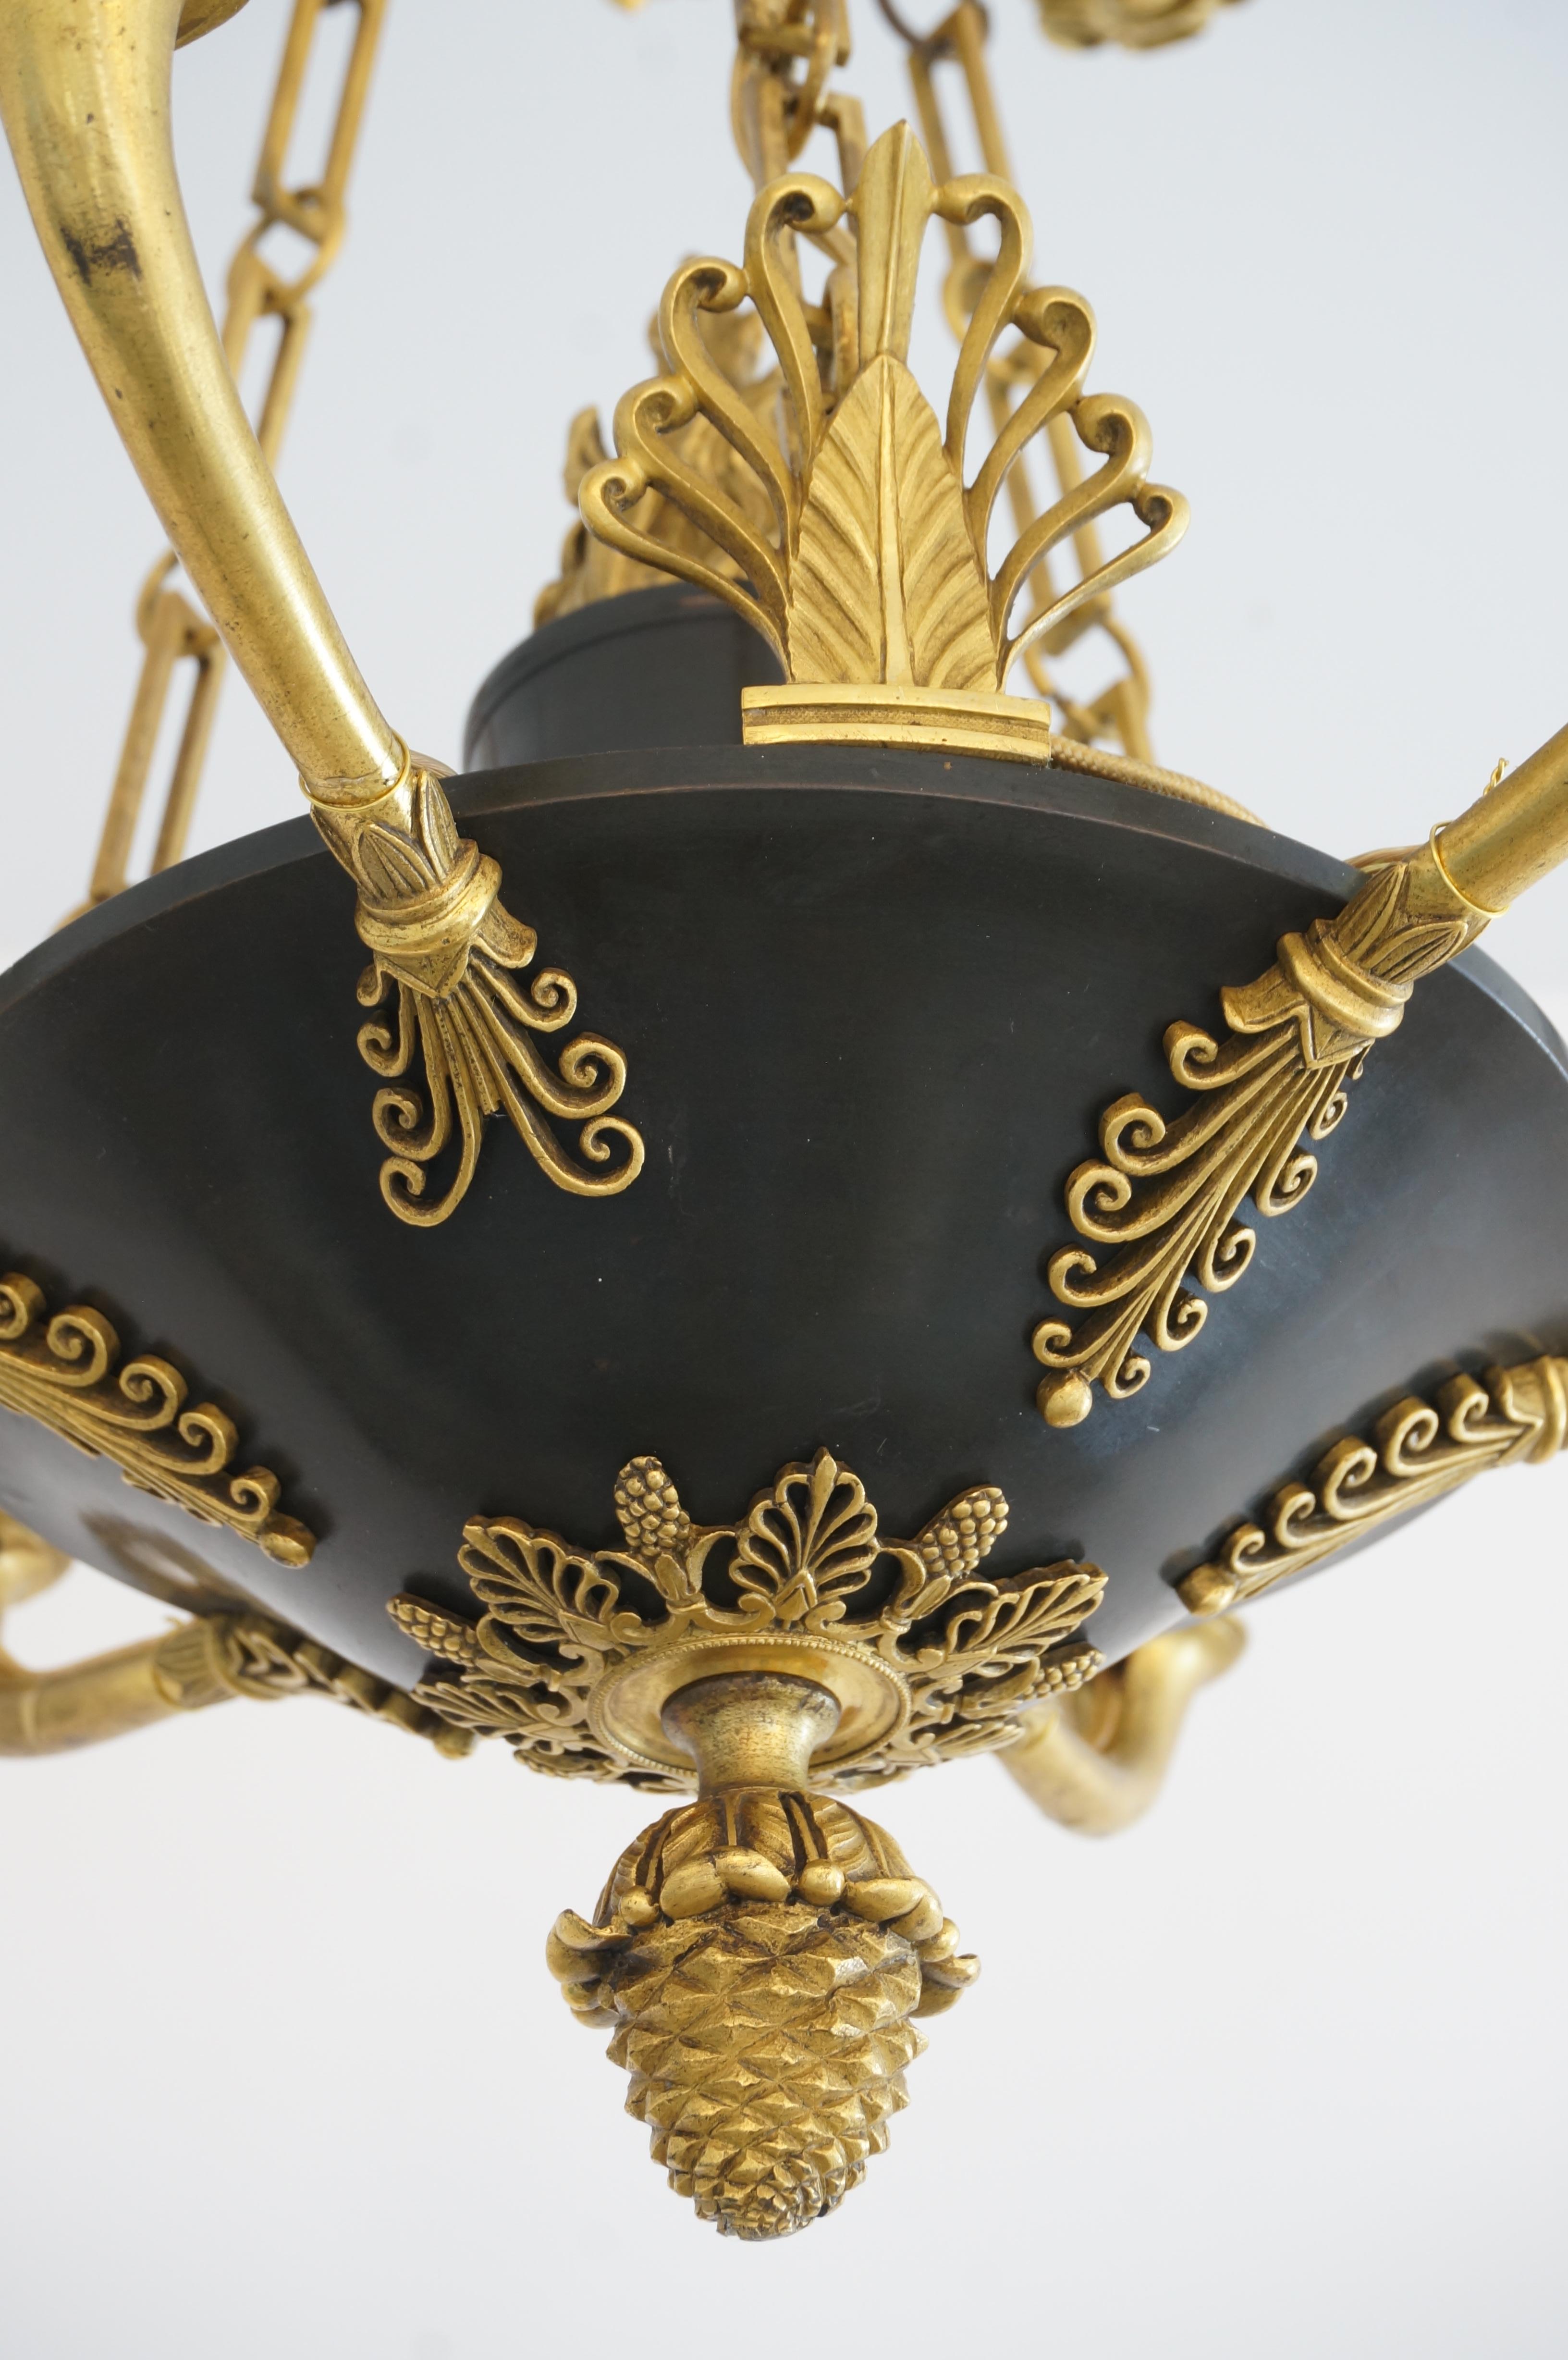 Dieser stilvolle französische Empire-Kronleuchter stammt aus der ersten Hälfte des 19. Jahrhunderts und ist aus Bronze dore und patinierter Bronze gefertigt.

Hinweis: Das Stück wurde professionell neu verkabelt und benötigt sechs